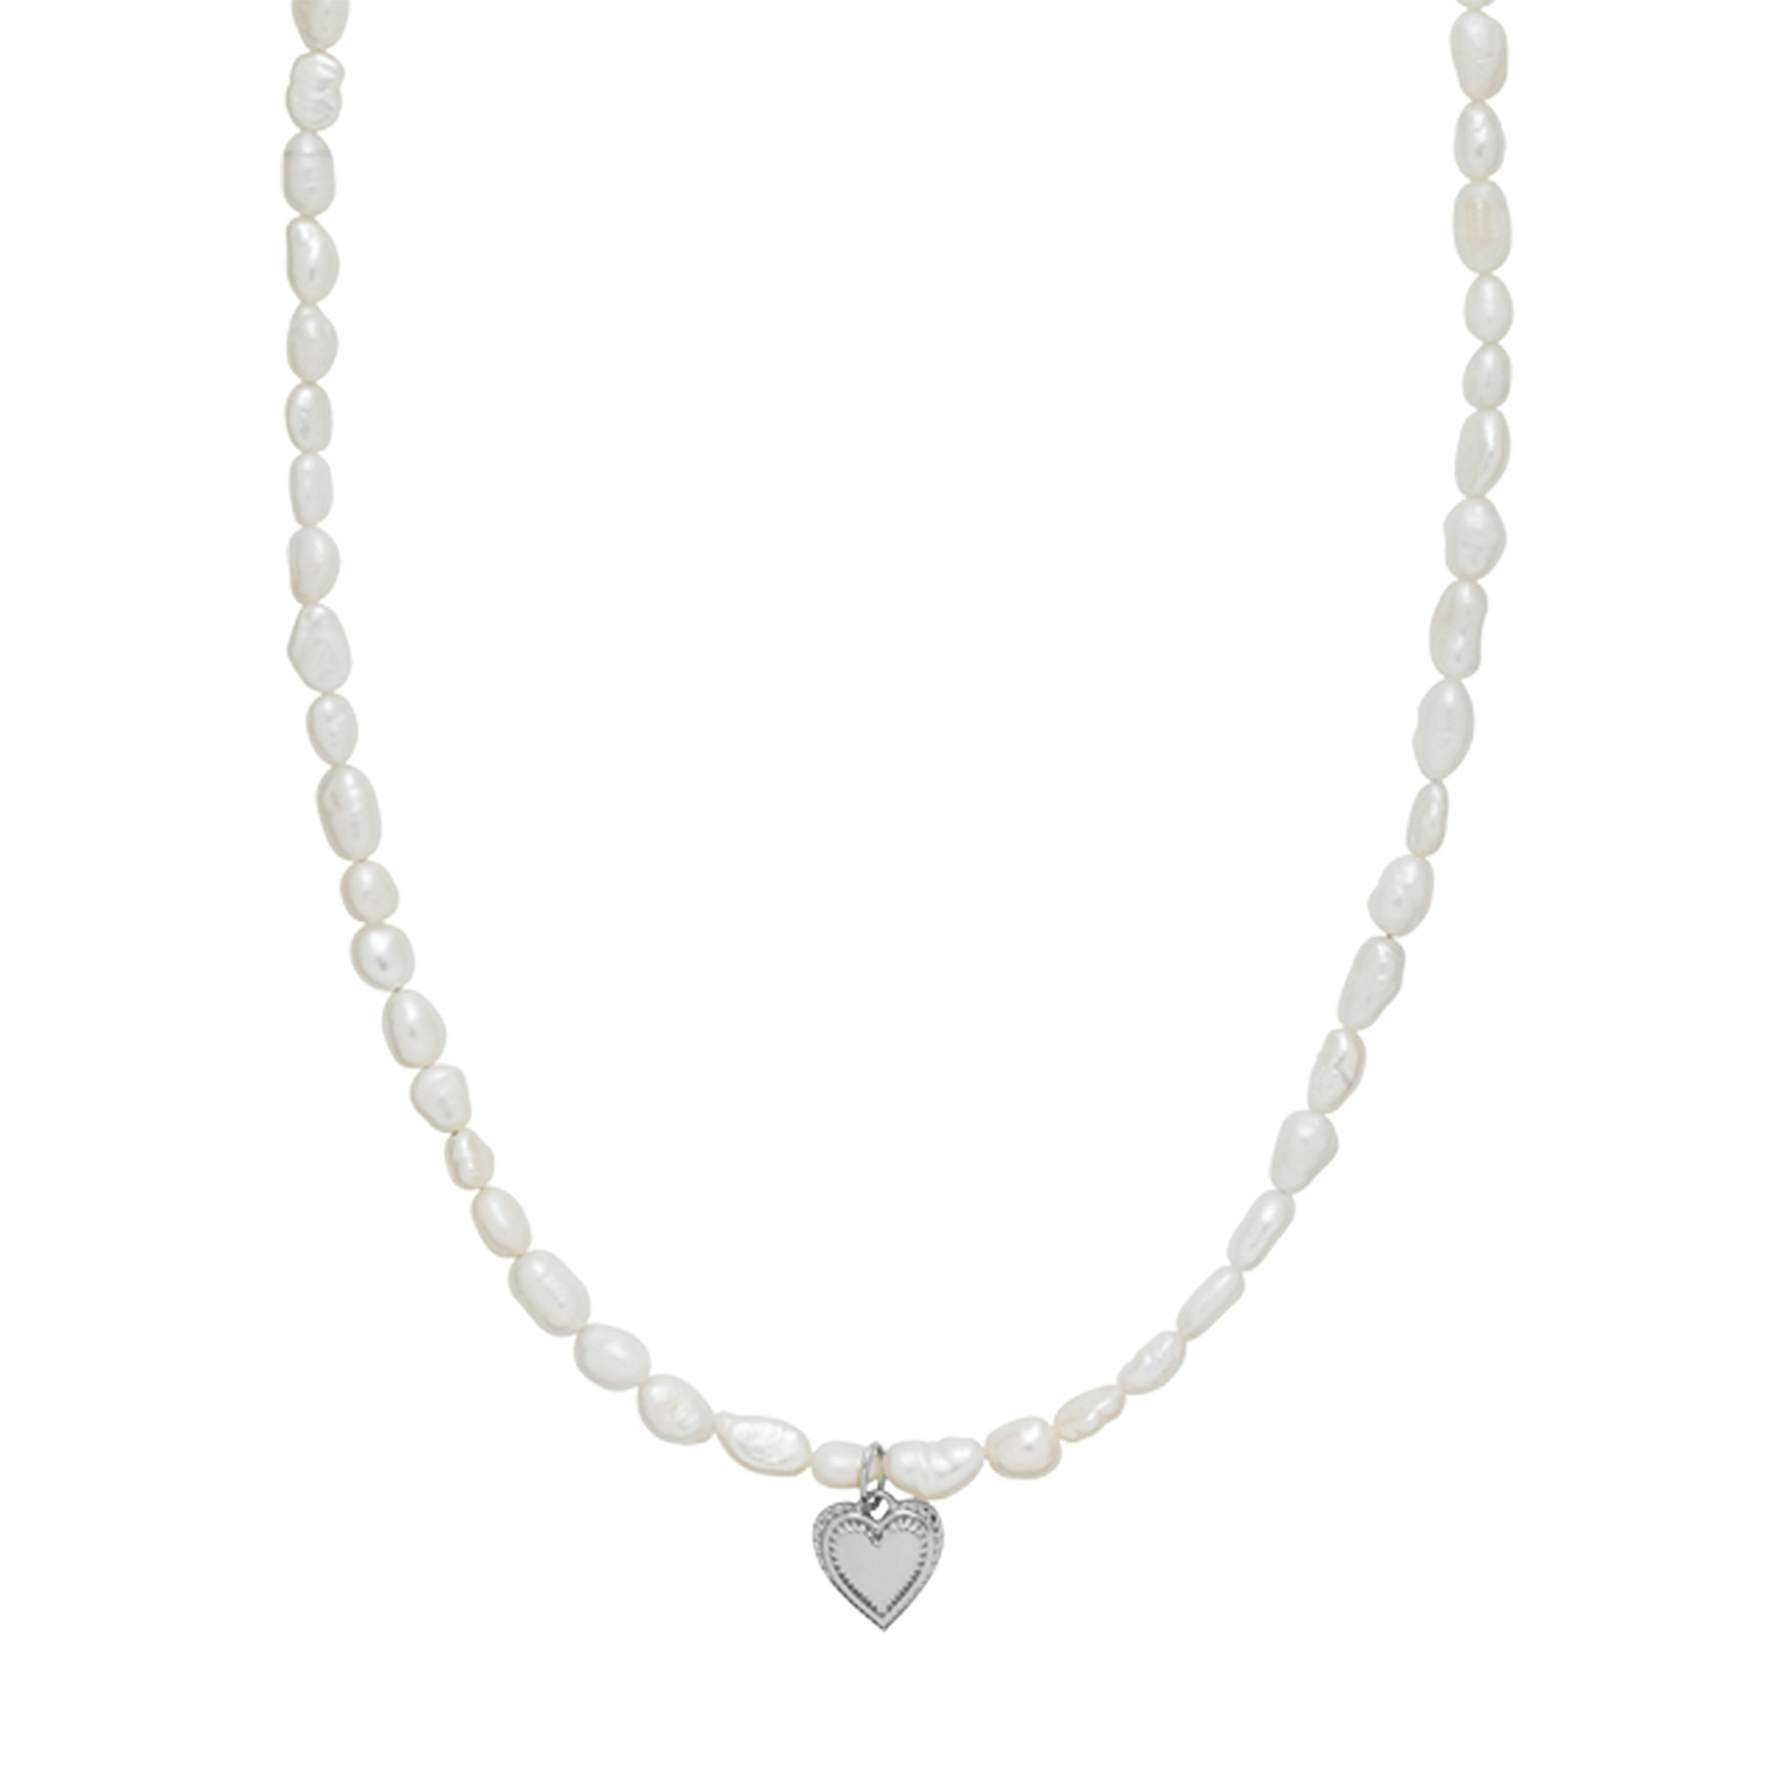 Anne-Sofie Krab x Sistie Heart Necklace von Sistie in Silber Sterling 925